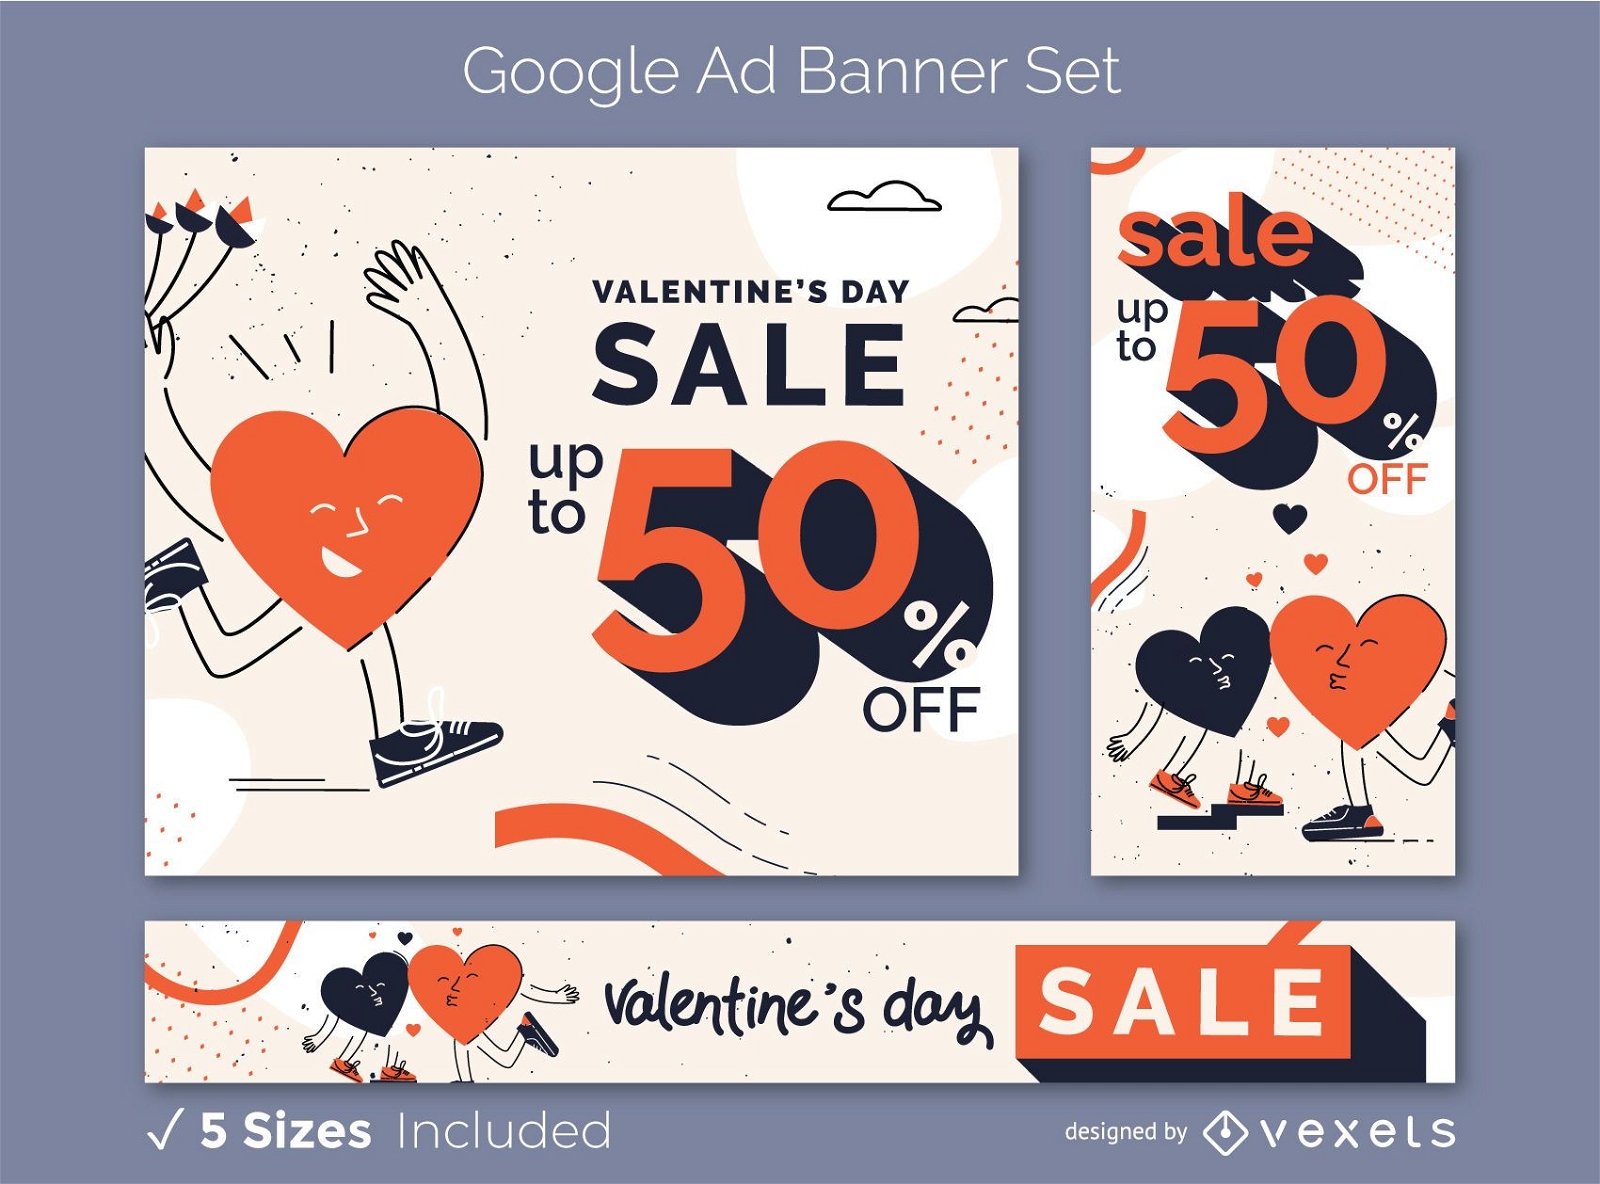 Valentine's ad banner set